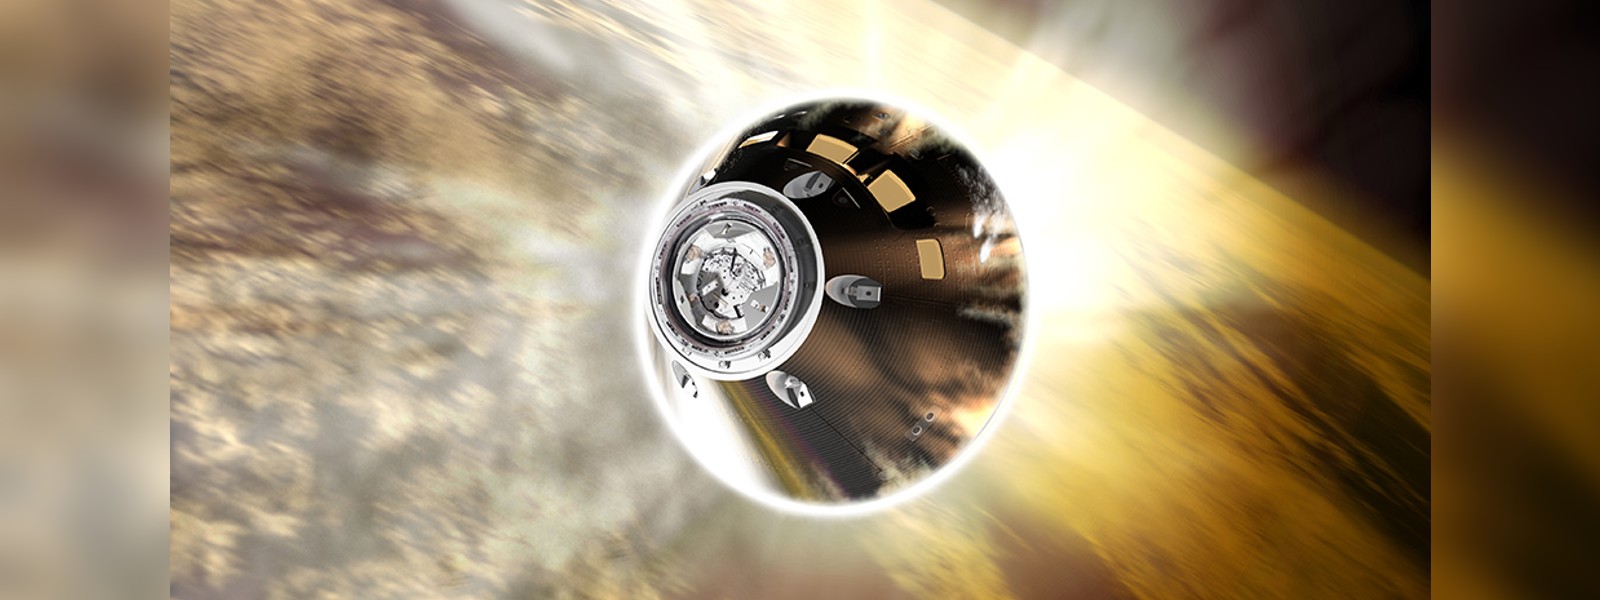 Nasa's Orion capsule on target for splashdown